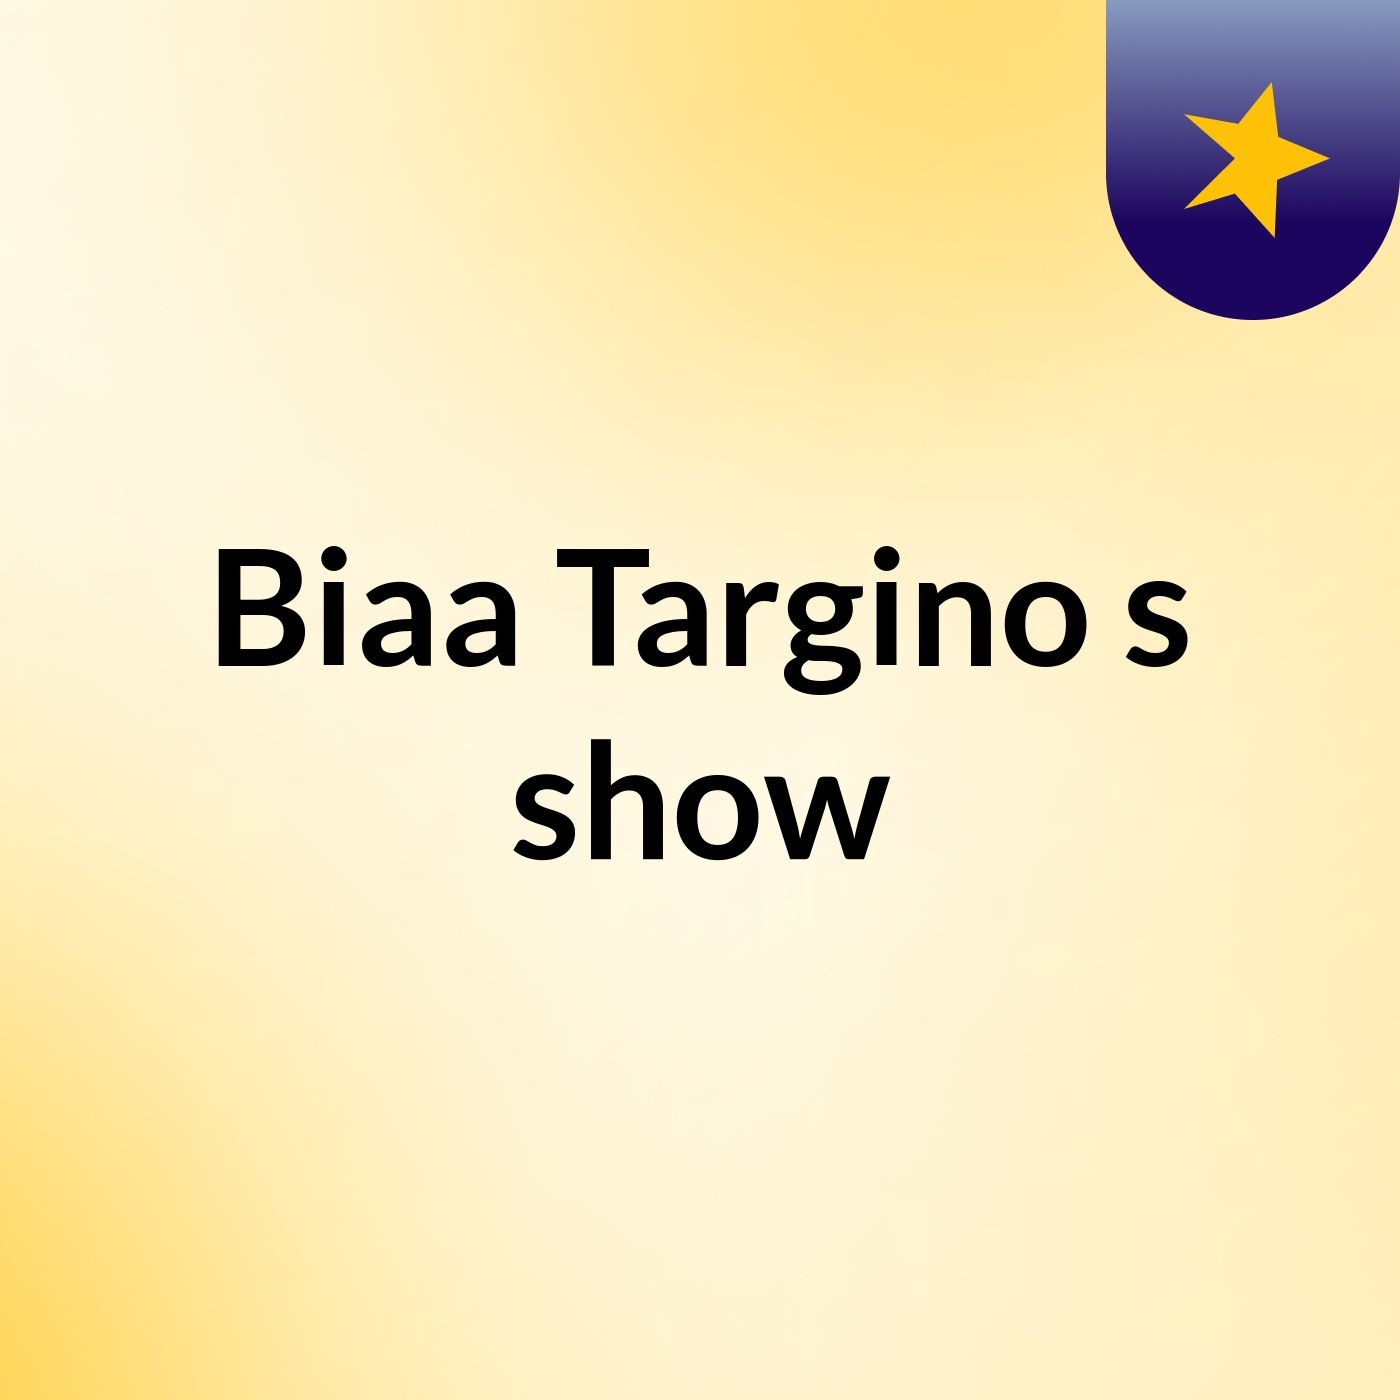 Biaa Targino's show